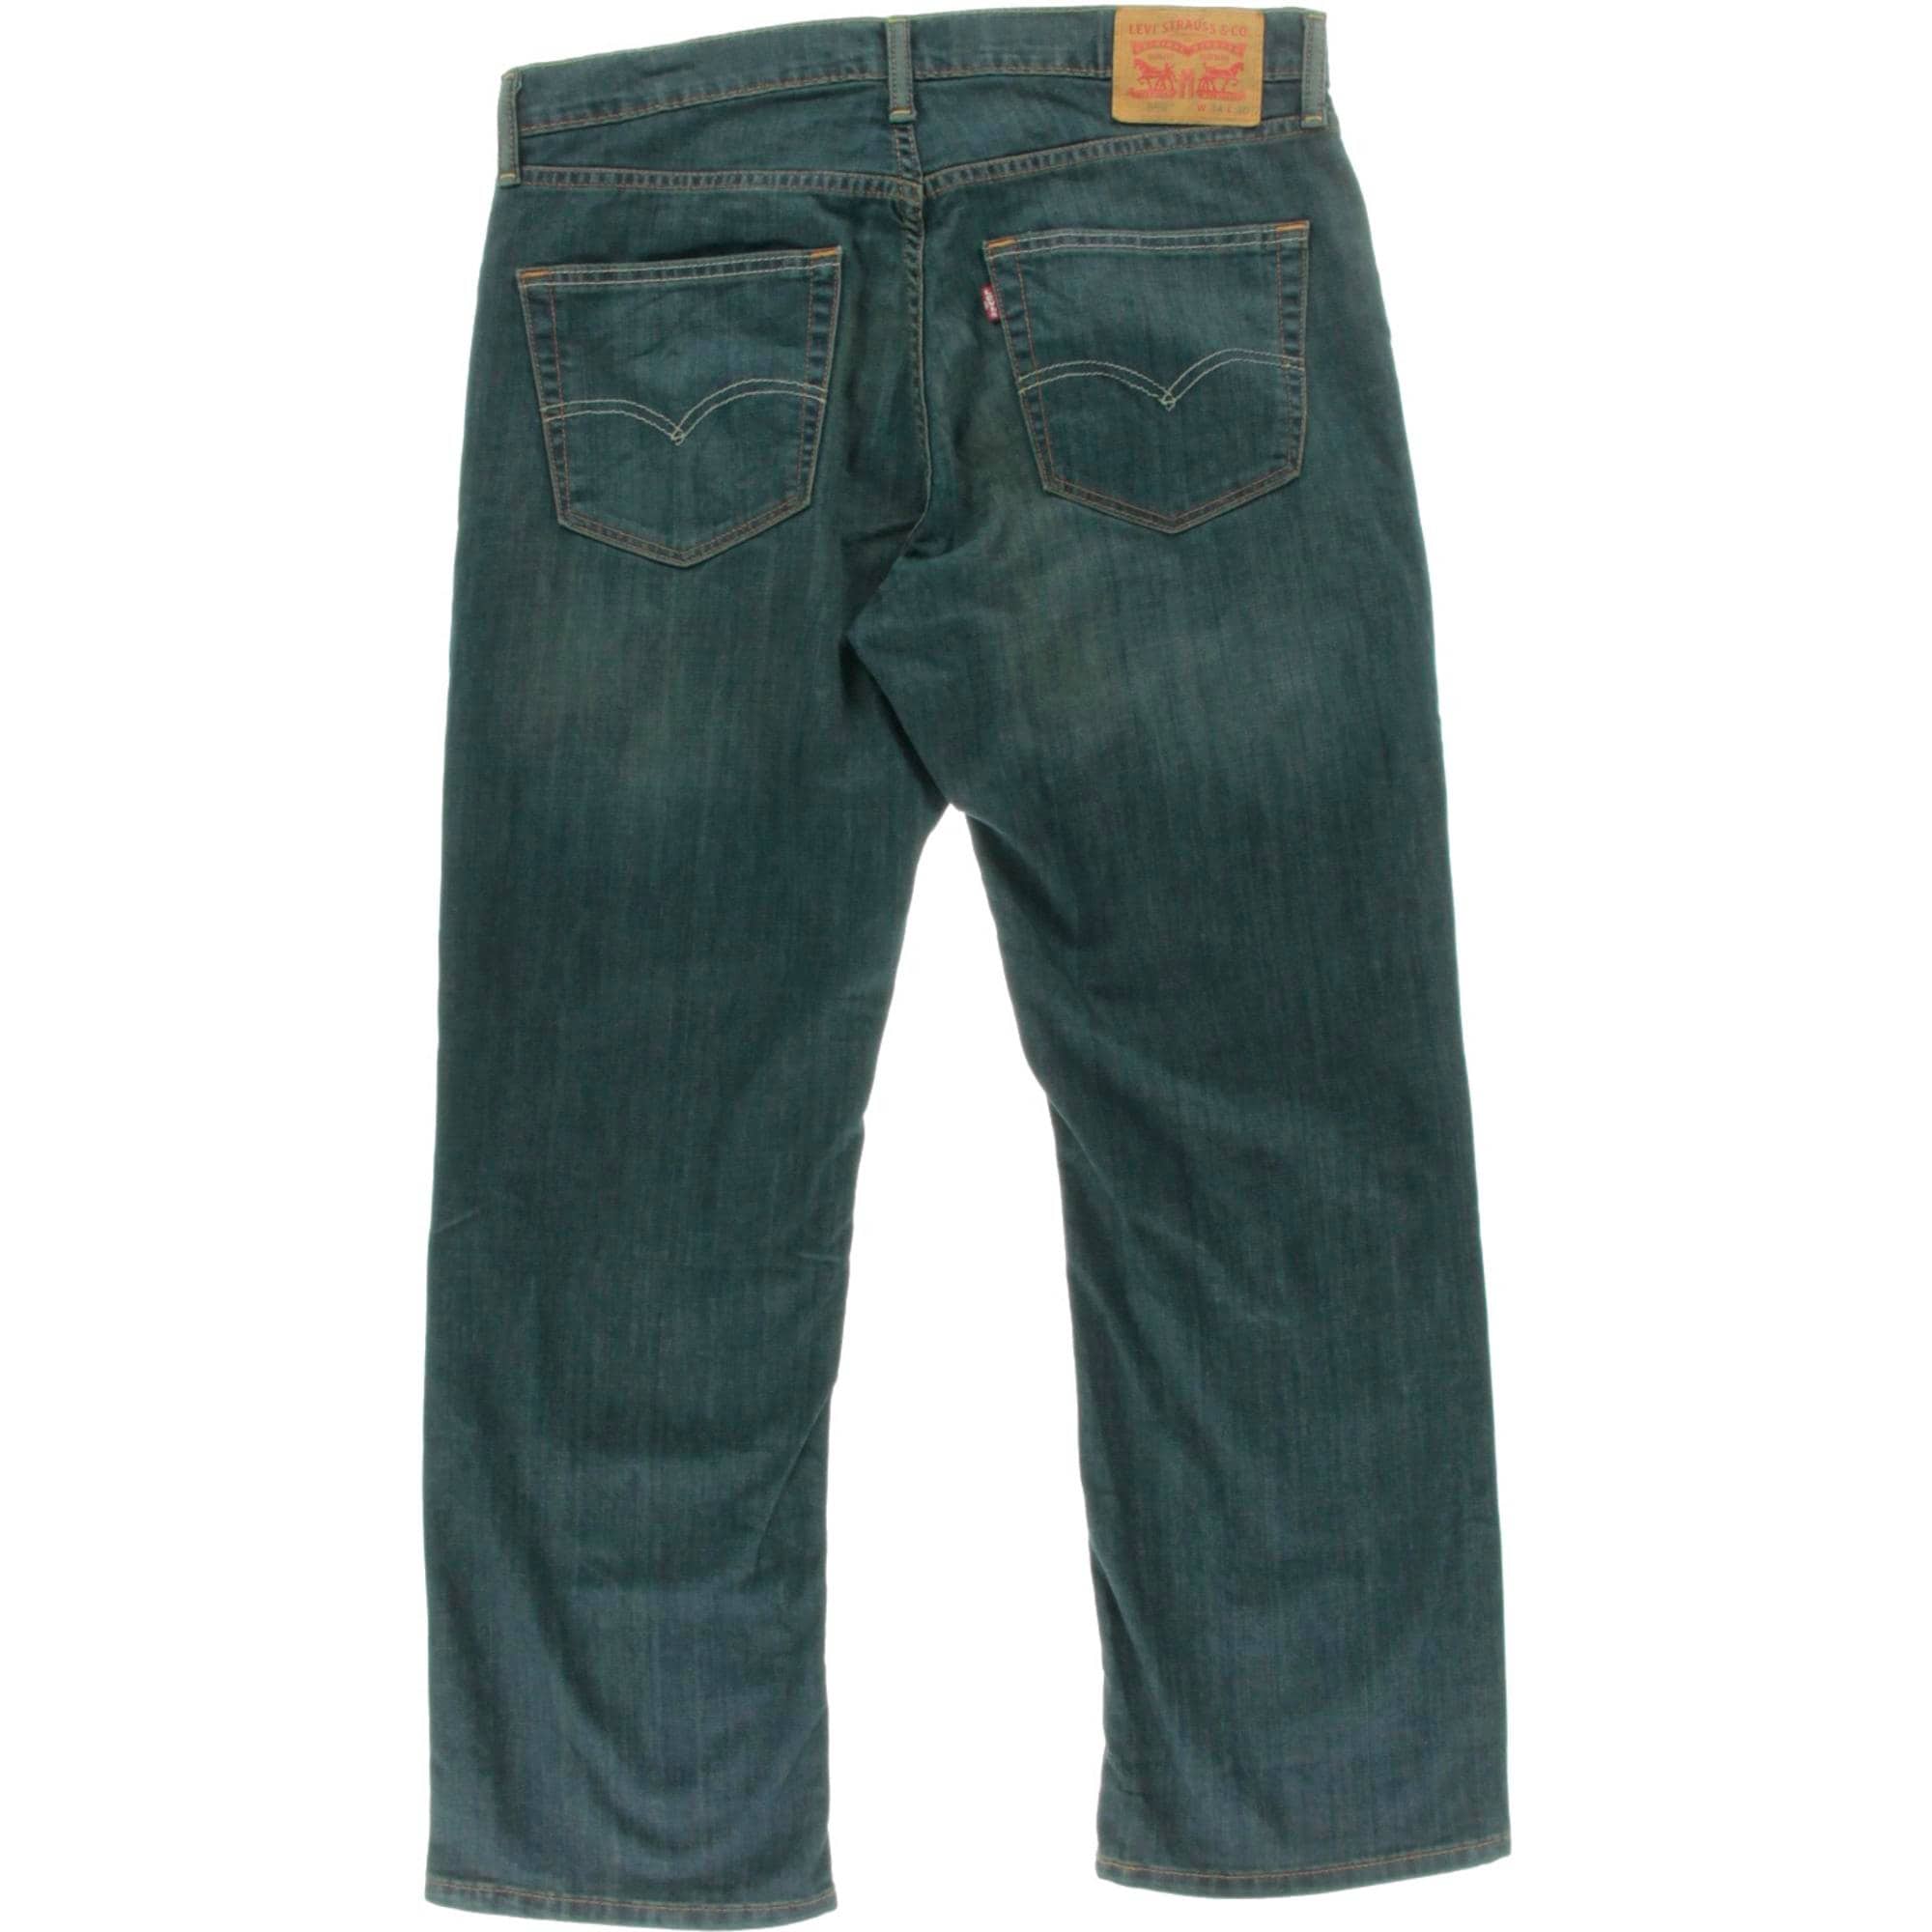 levi jeans 559 sale